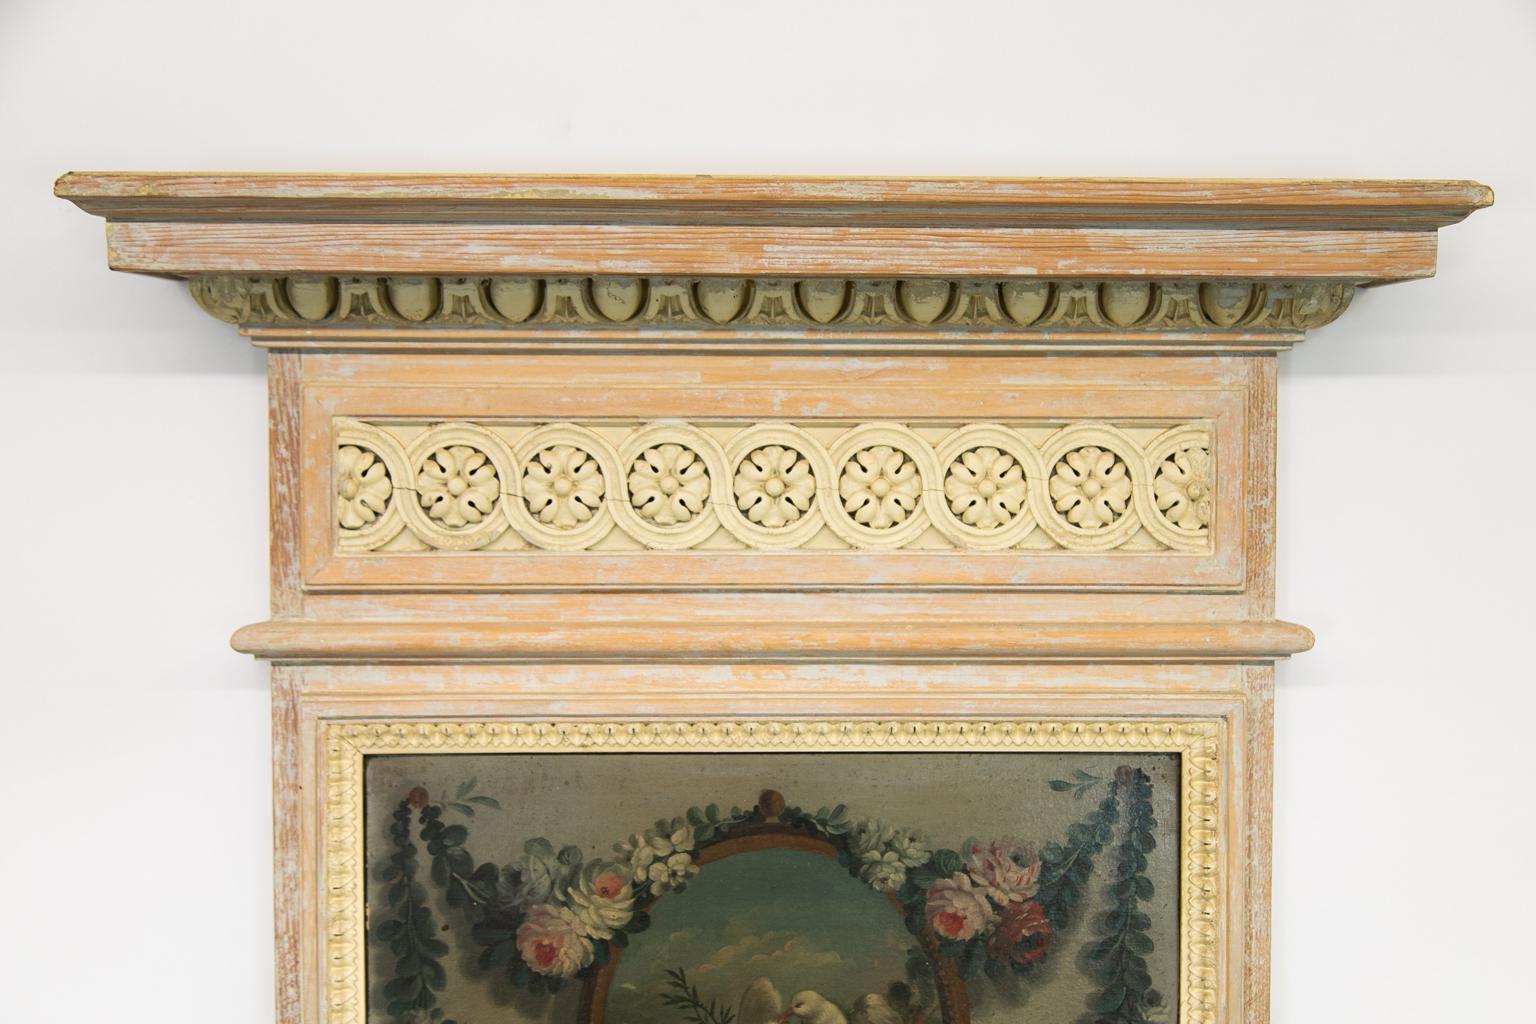 Ce miroir est peint avec une peinture de couleur crème qui a été intentionnellement dégradée. La corniche est ornée d'une moulure en forme d'œuf et de fléchette sculptée en haut-relief. La frise présente un motif floral entrelacé sculpté, encadré